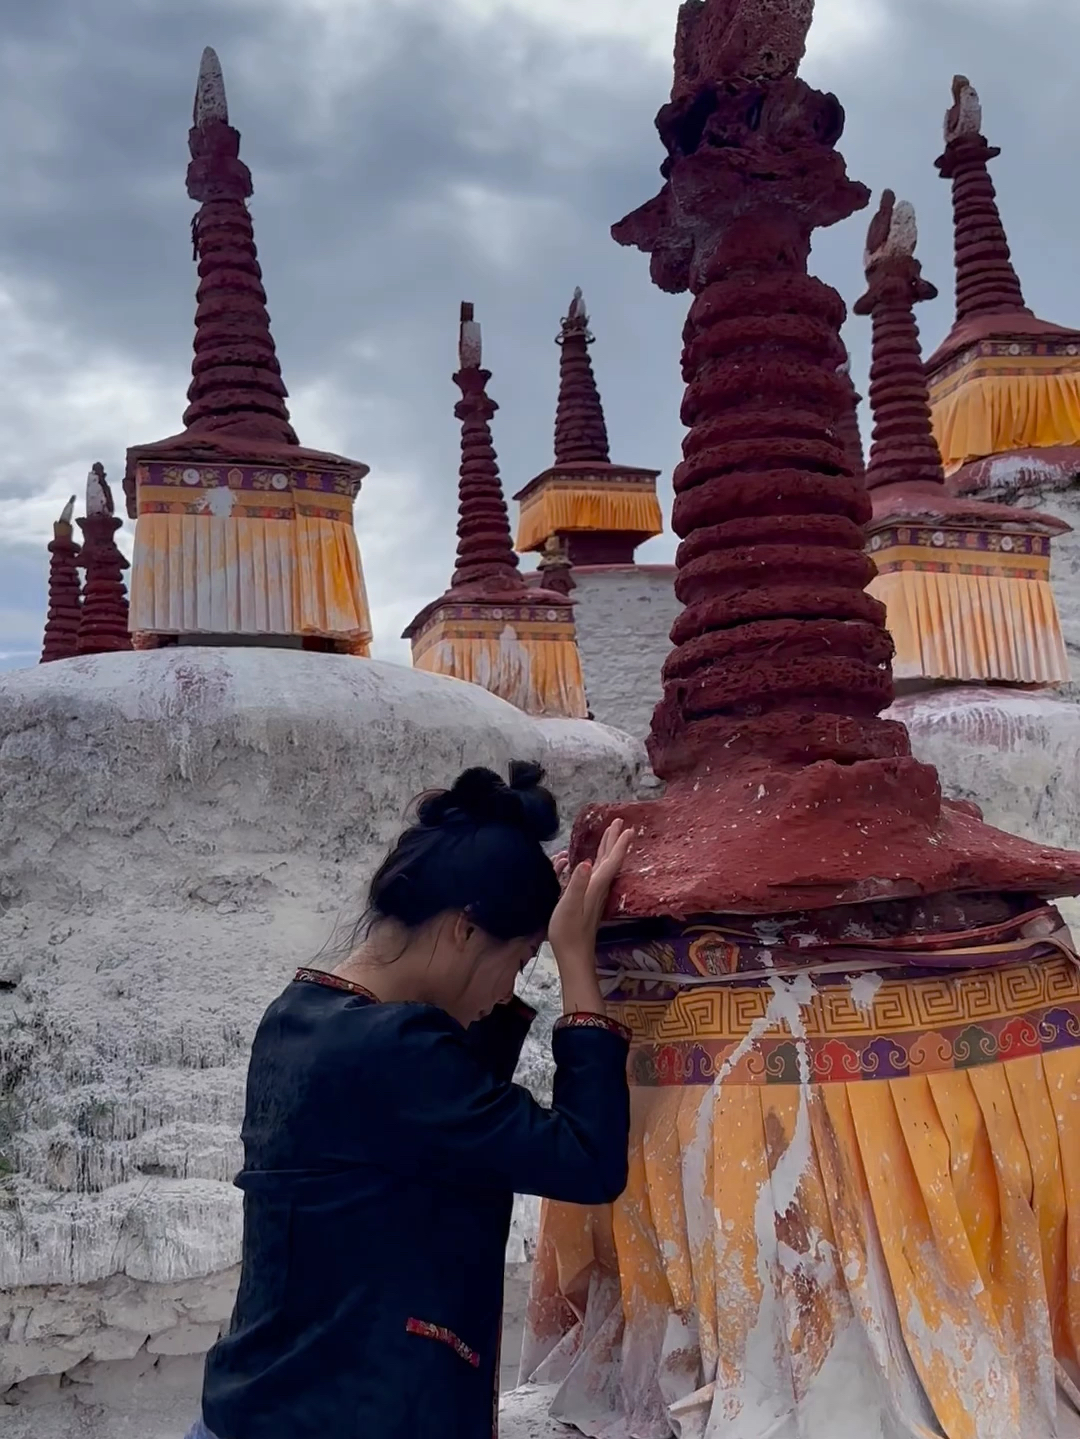 夏寺，又称尼姑寺，全名潘玉夏塔囊寺，其始建于元朝时期，距离已有700多年的历史，西藏最美尼姑庵，一座